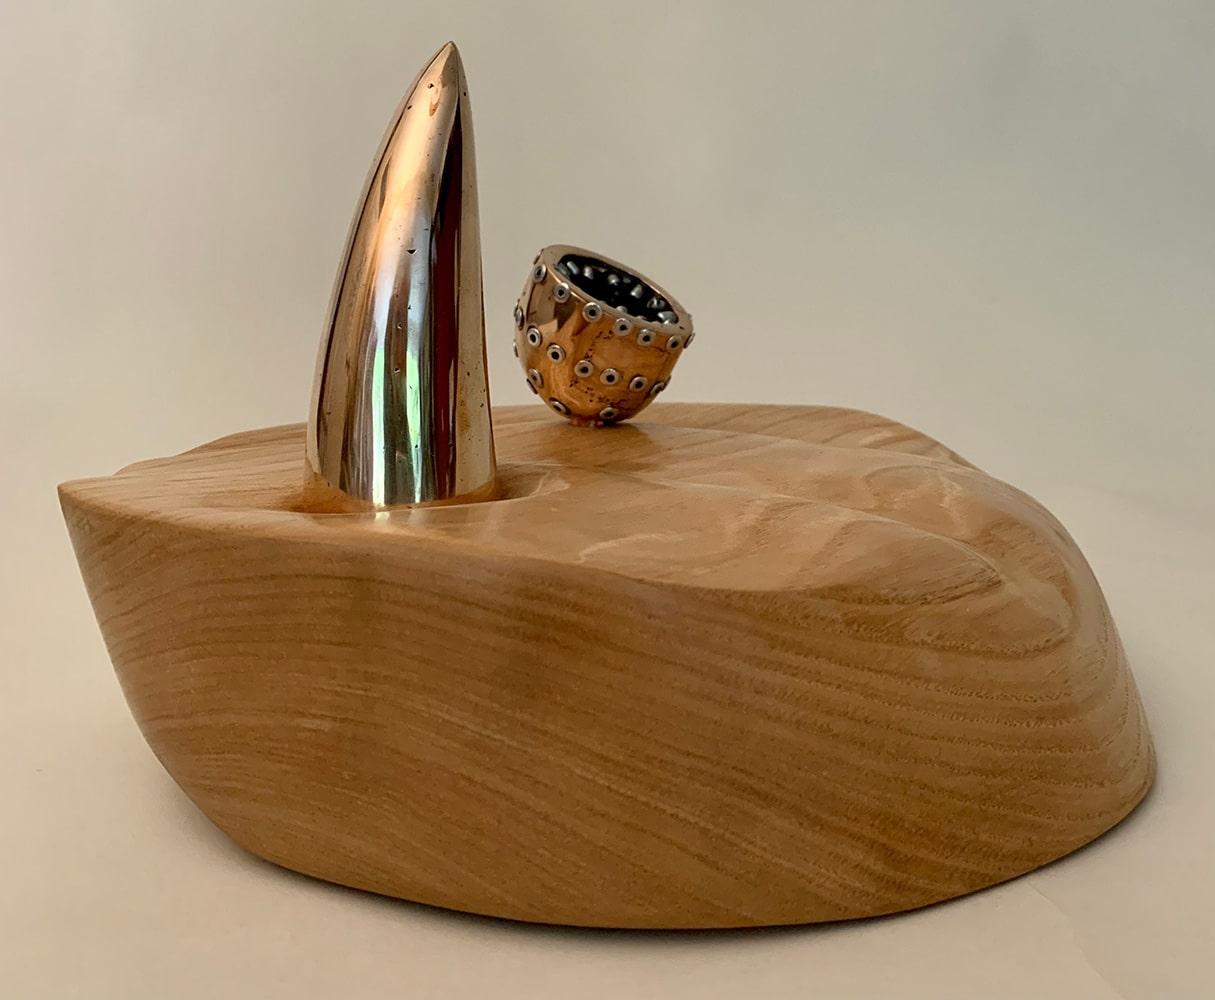 Variation on a theme II : Hegemony est une sculpture unique en bronze, acier et bois de frêne de l'artiste contemporain Peter Steele, dont les dimensions sont de 19 x 31 x 26 cm (7,5 × 12,2 × 10,2 in).  
La sculpture est accompagnée d'un certificat